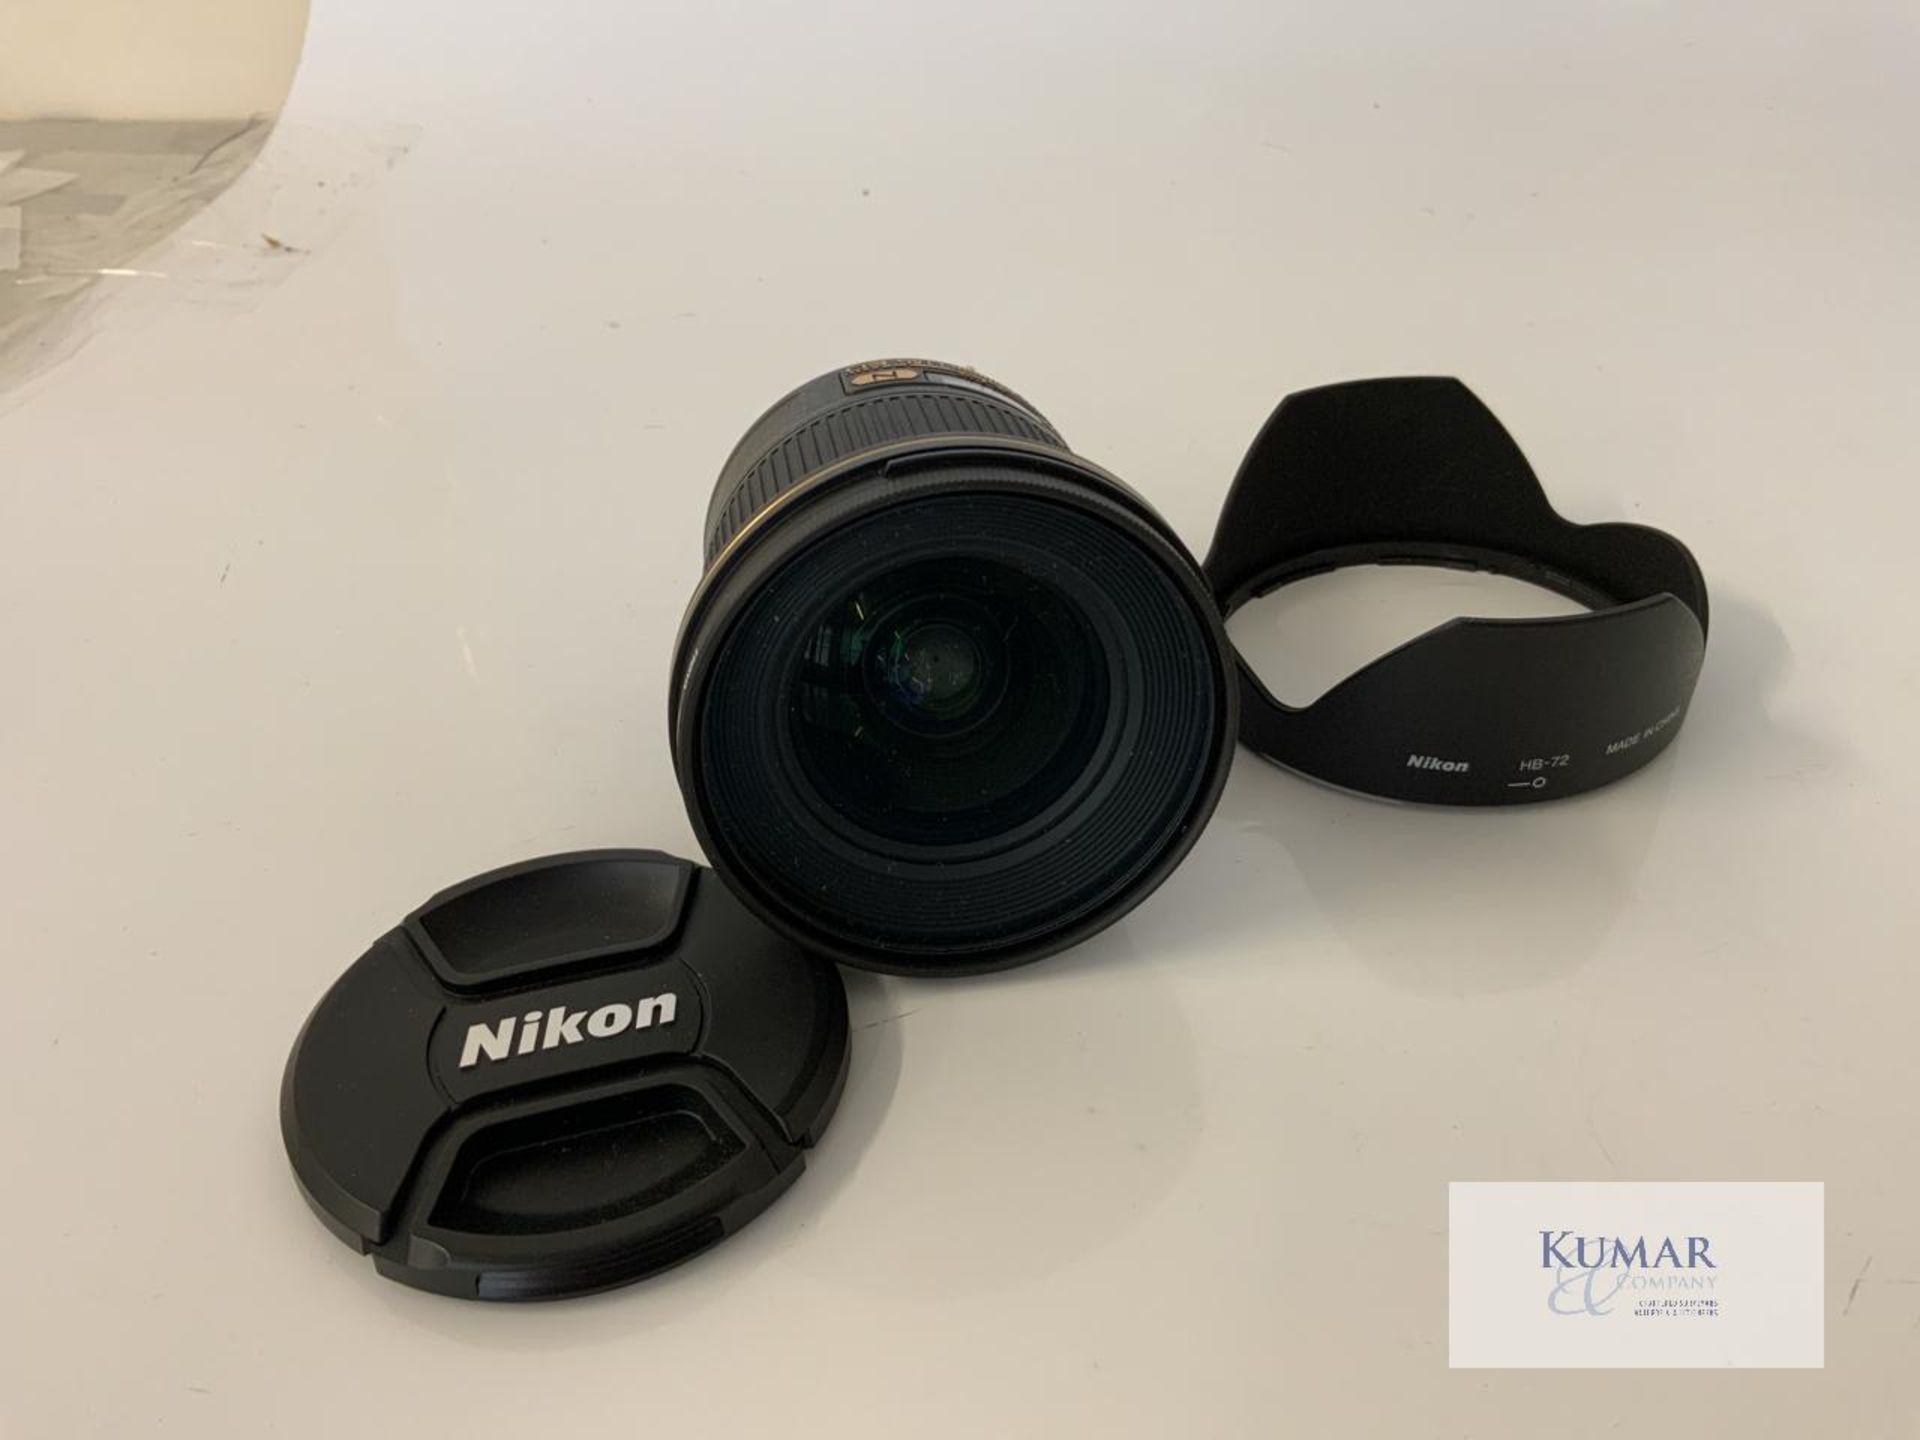 Nikon AF-S Nikkor 20mm 1:1.8G ED Zoom Lens with Nikon HB 72 Lens Hood & Carry Case - Image 7 of 10